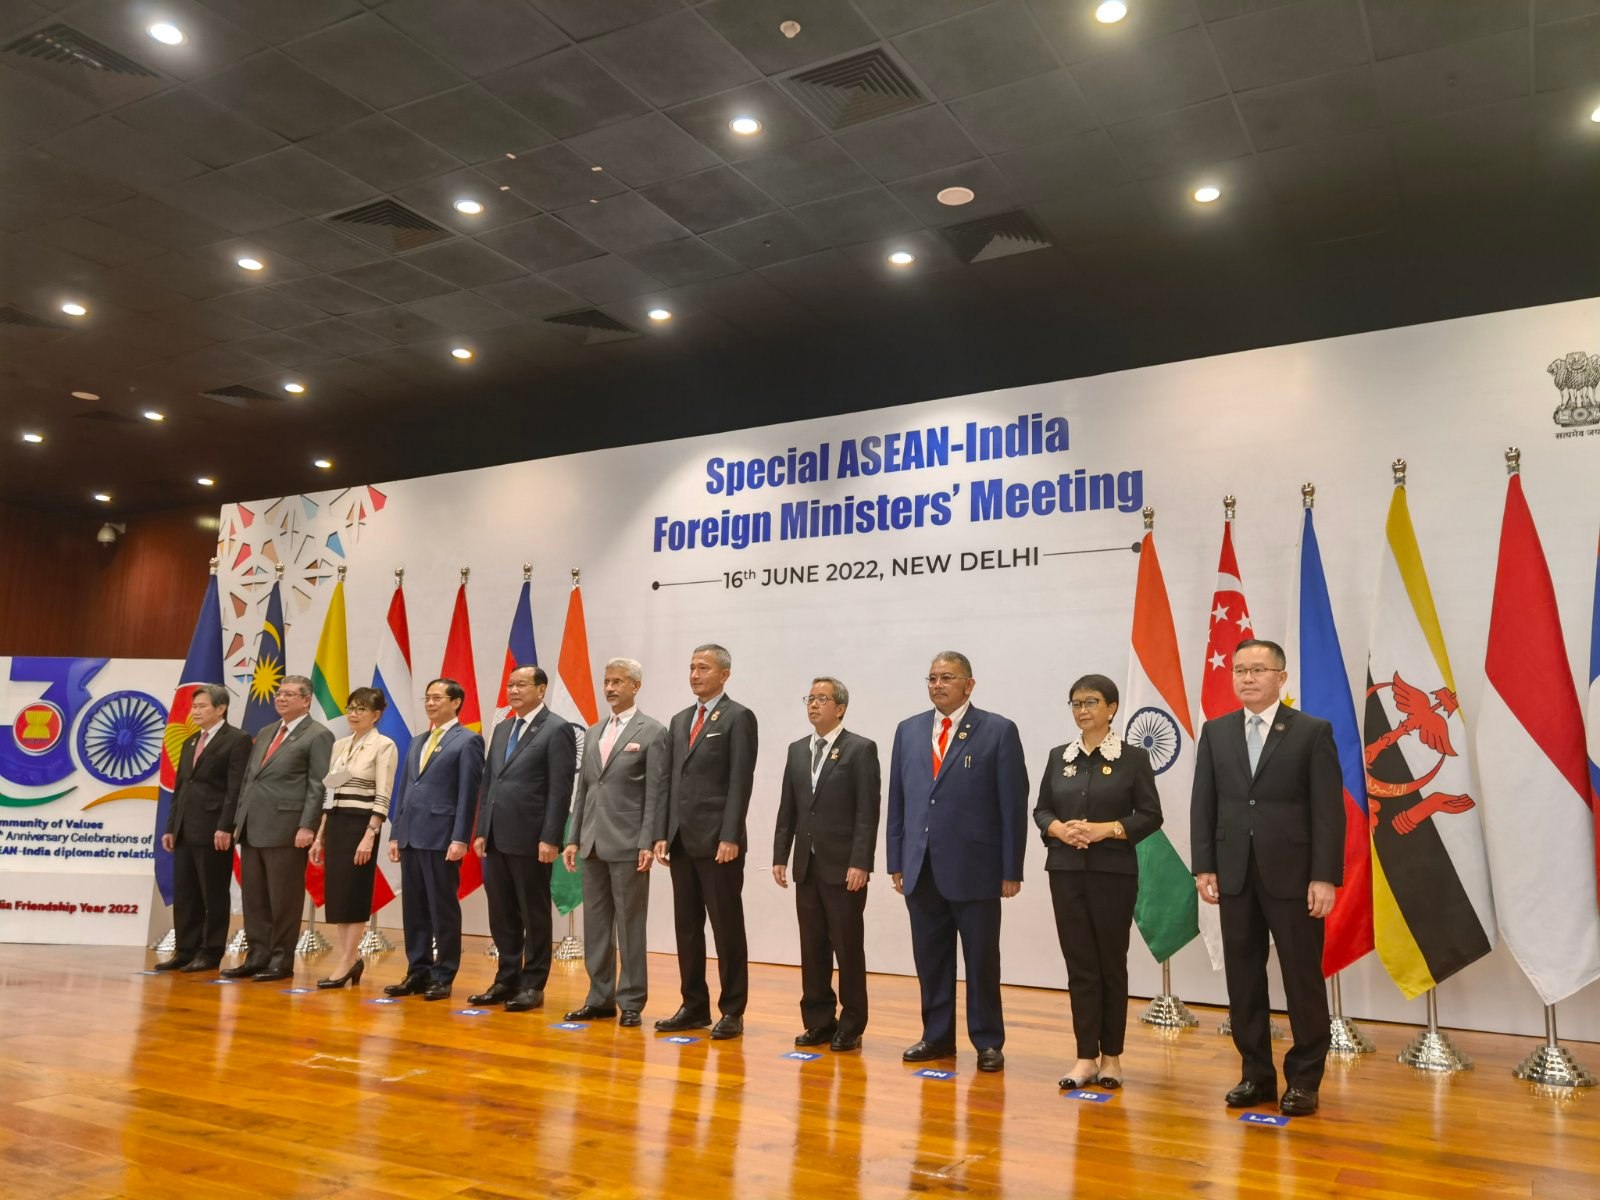 Representatives of ASEAN member states